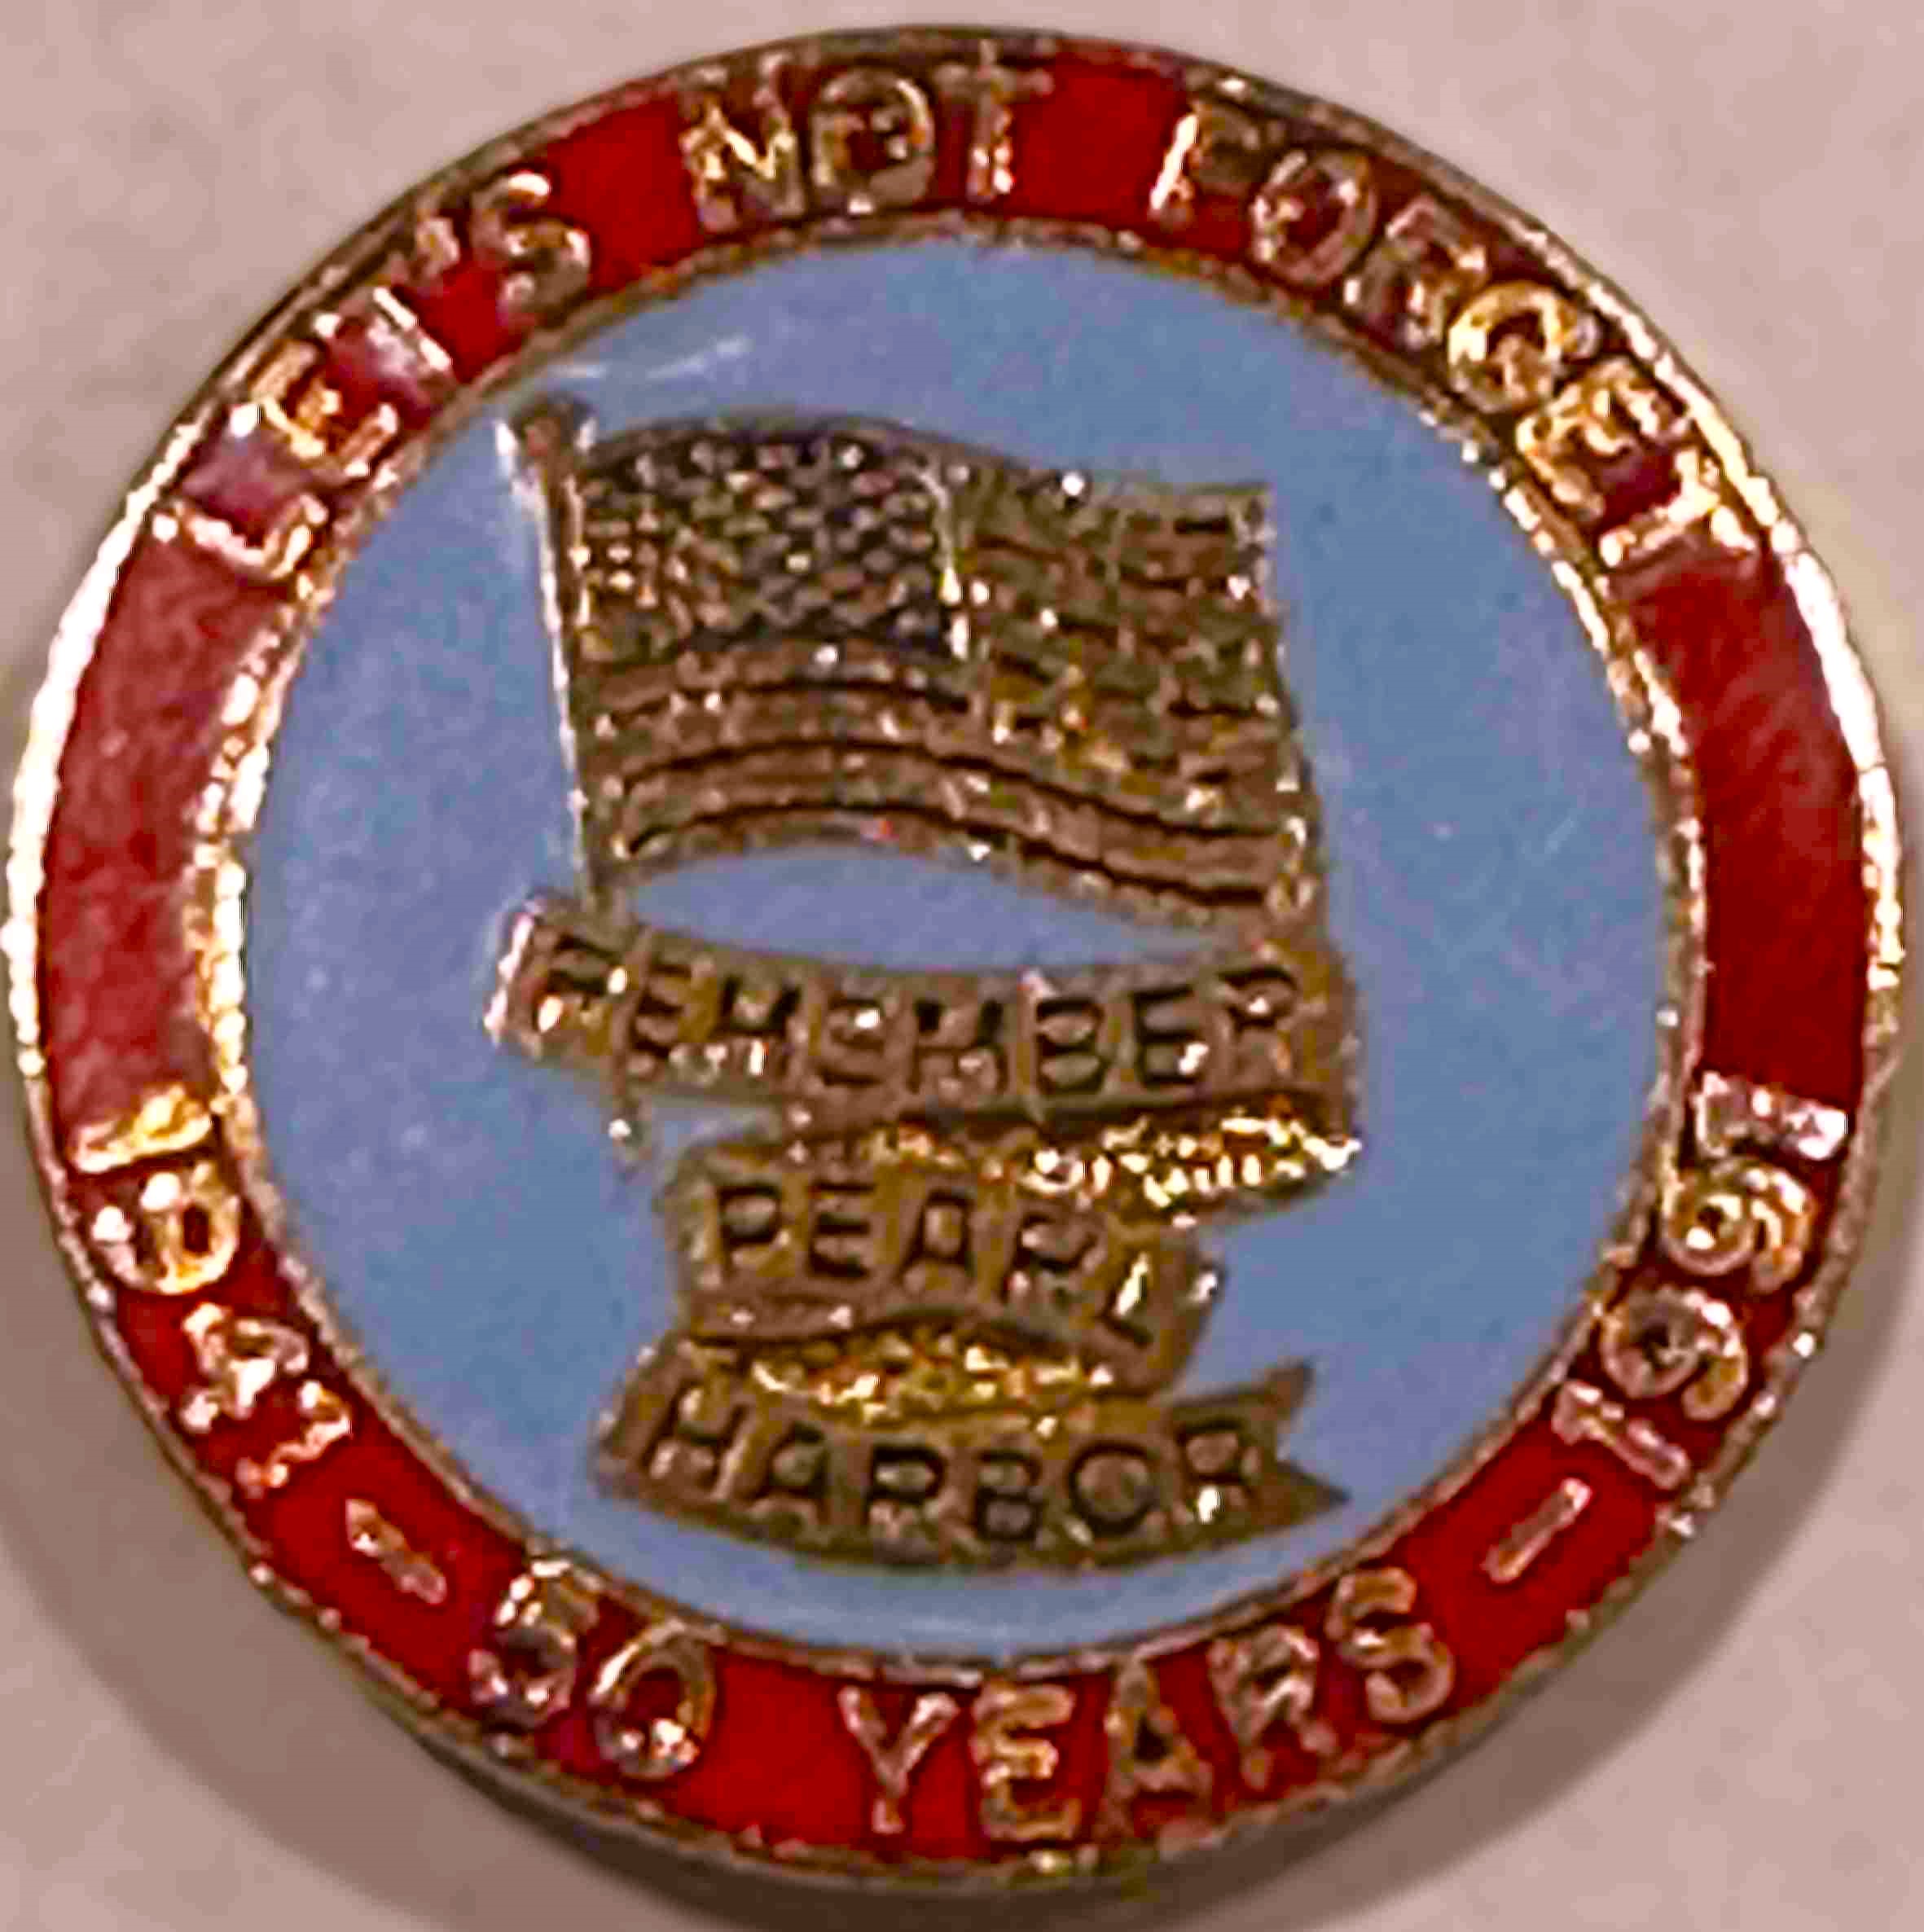  Pearl Harbor 50 Years Hat Pin